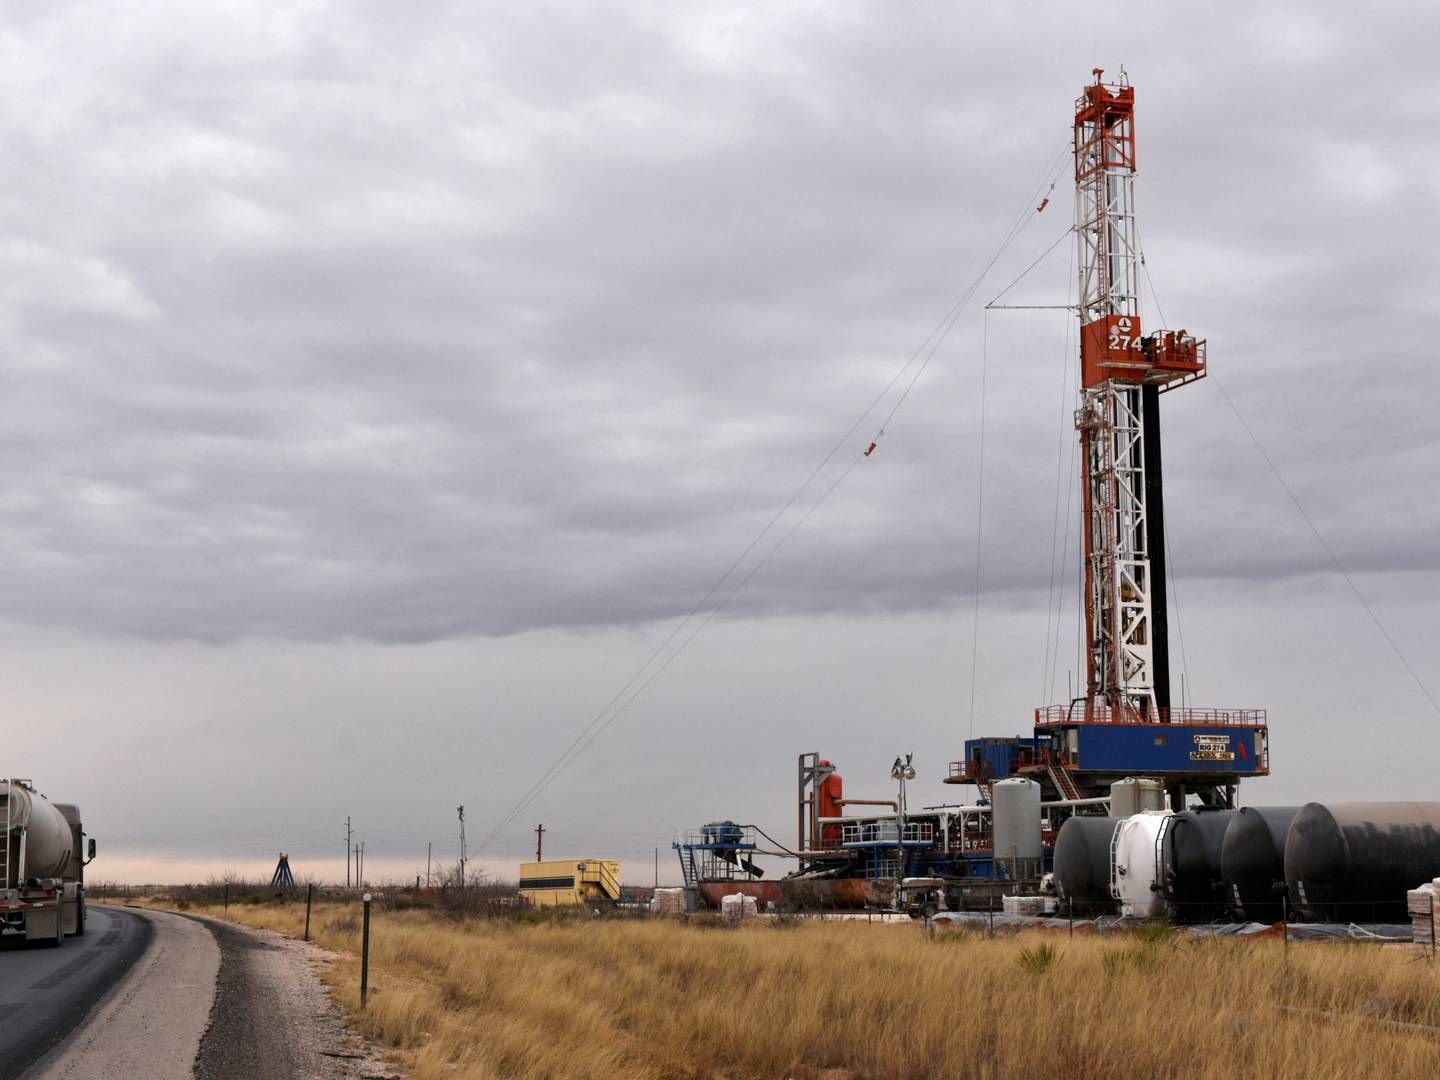 Olielagrene faldt mindre end ventet i USA, og det sender priserne ned. | Foto: Nick Oxford/Reuters/Ritzau Scanpix